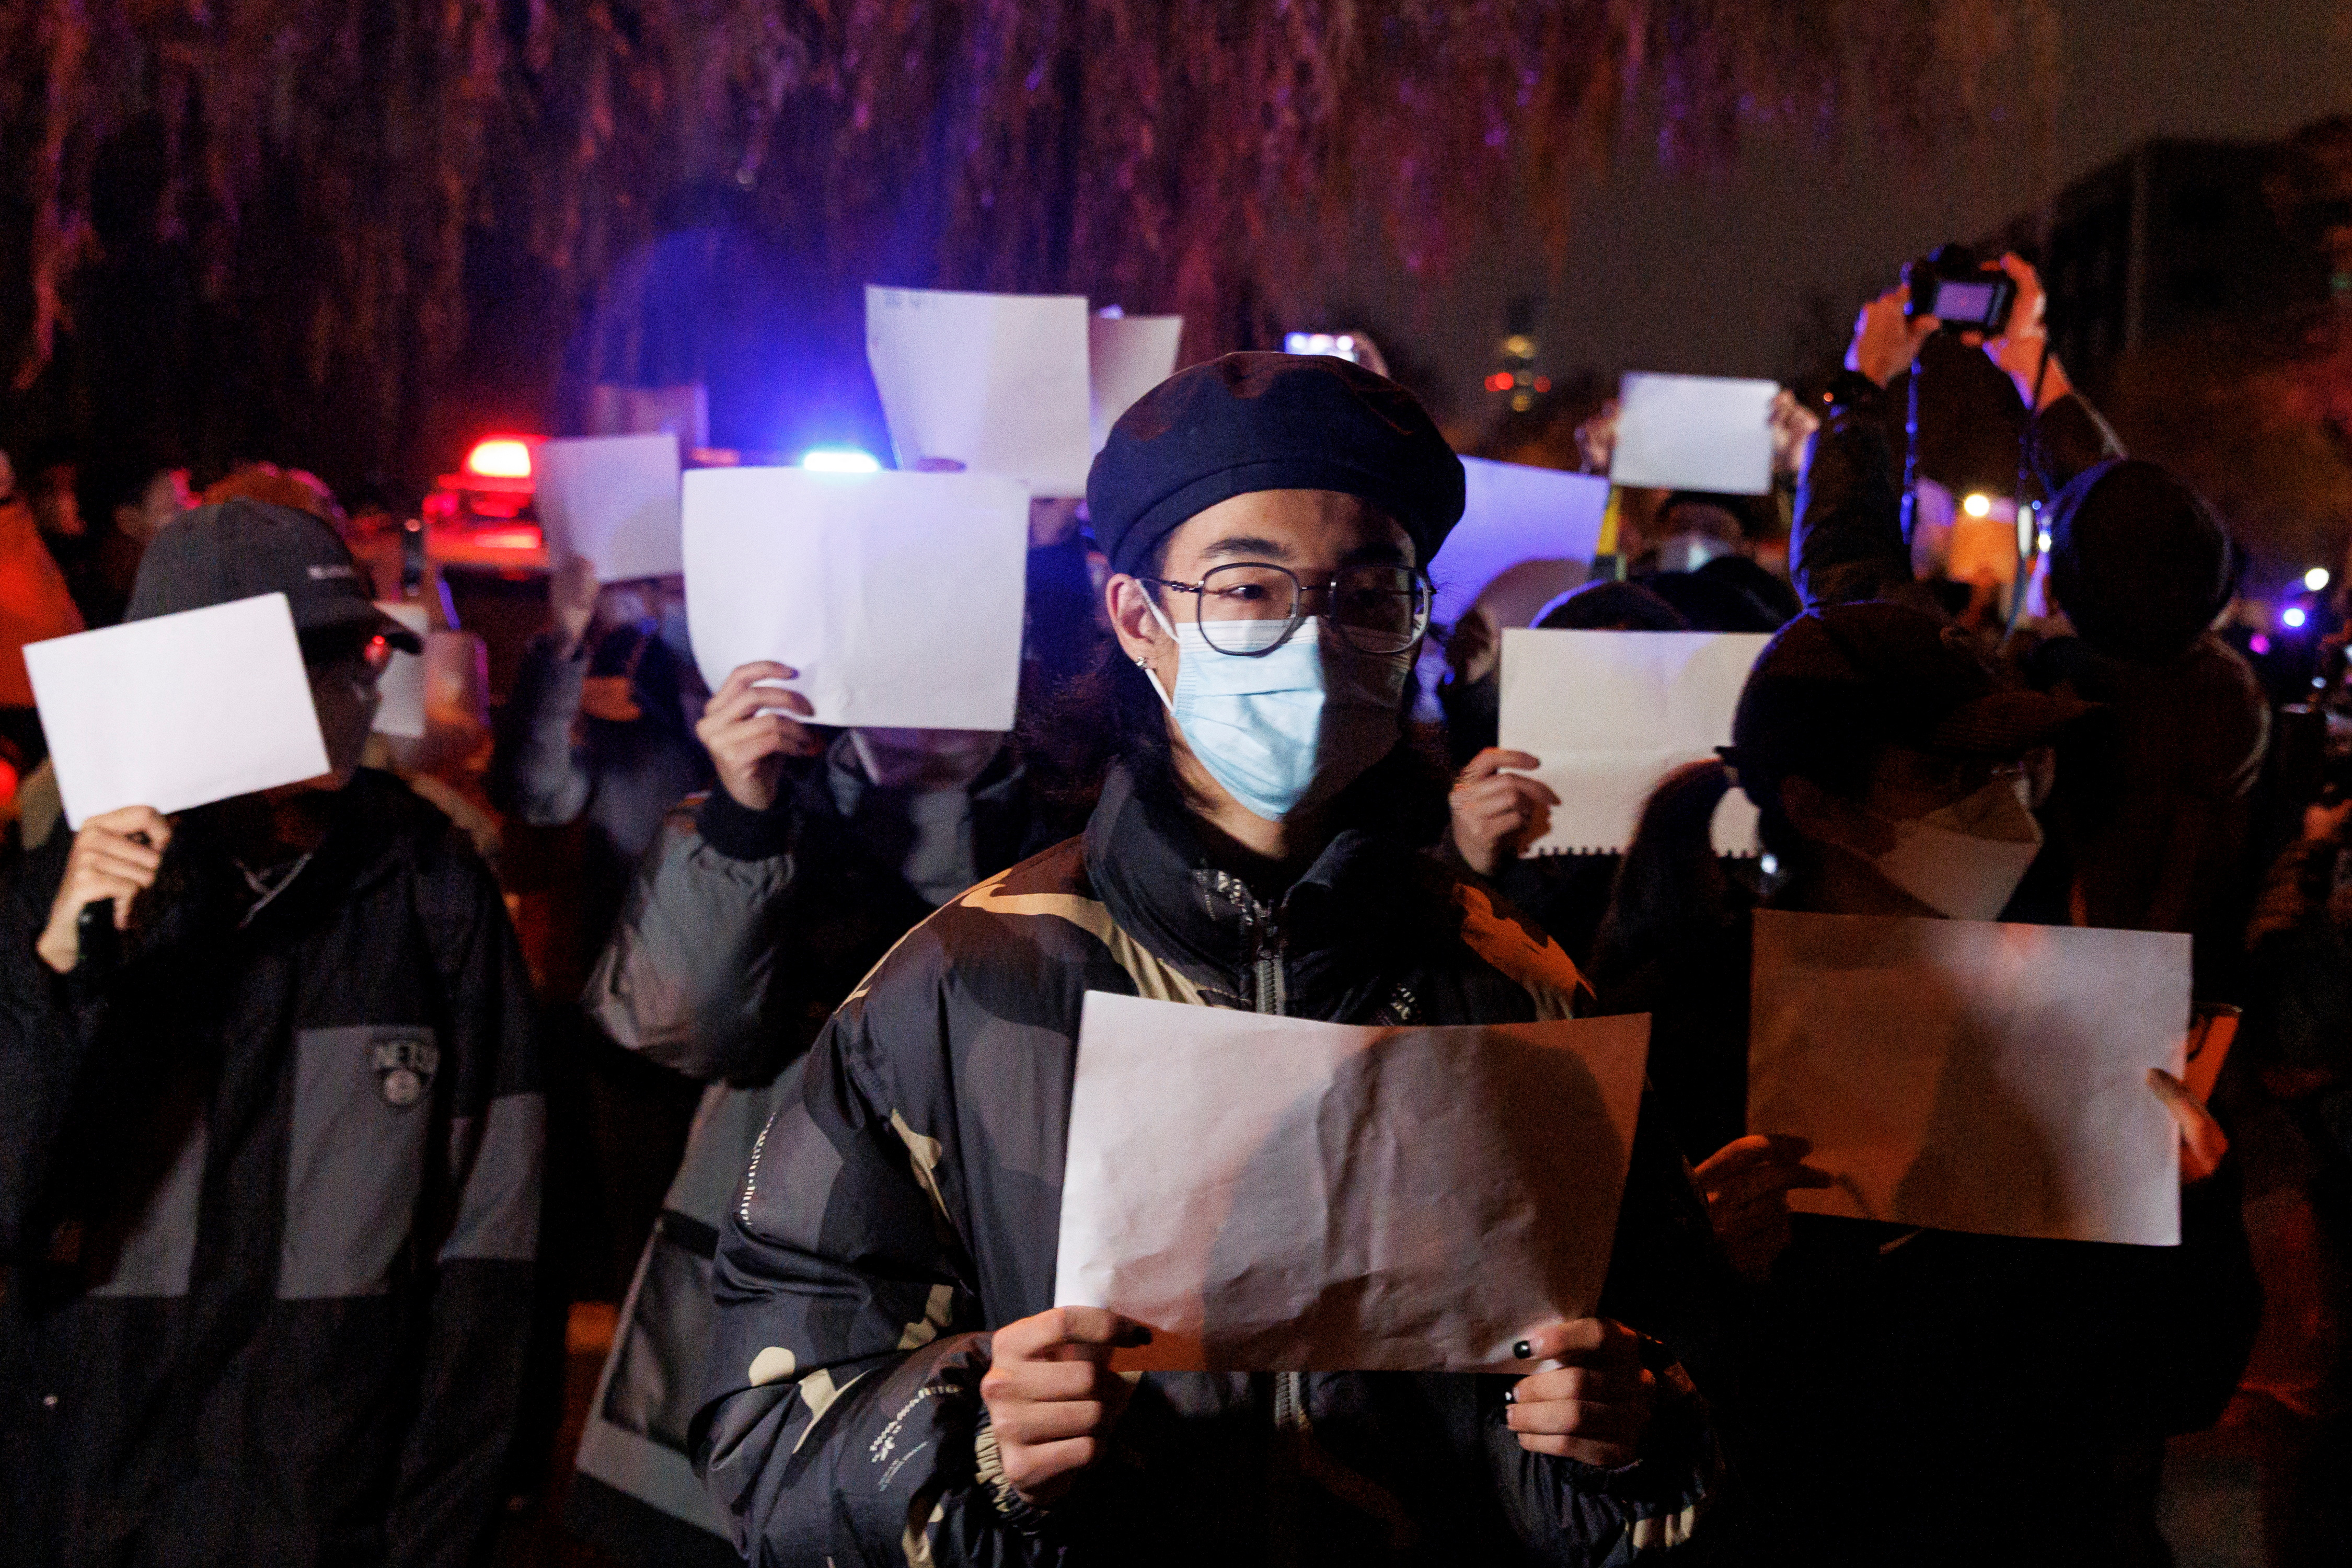 Las hojas en blanco, simolo de la lucha contra la censura en China (REUTERS/Thomas Peter)